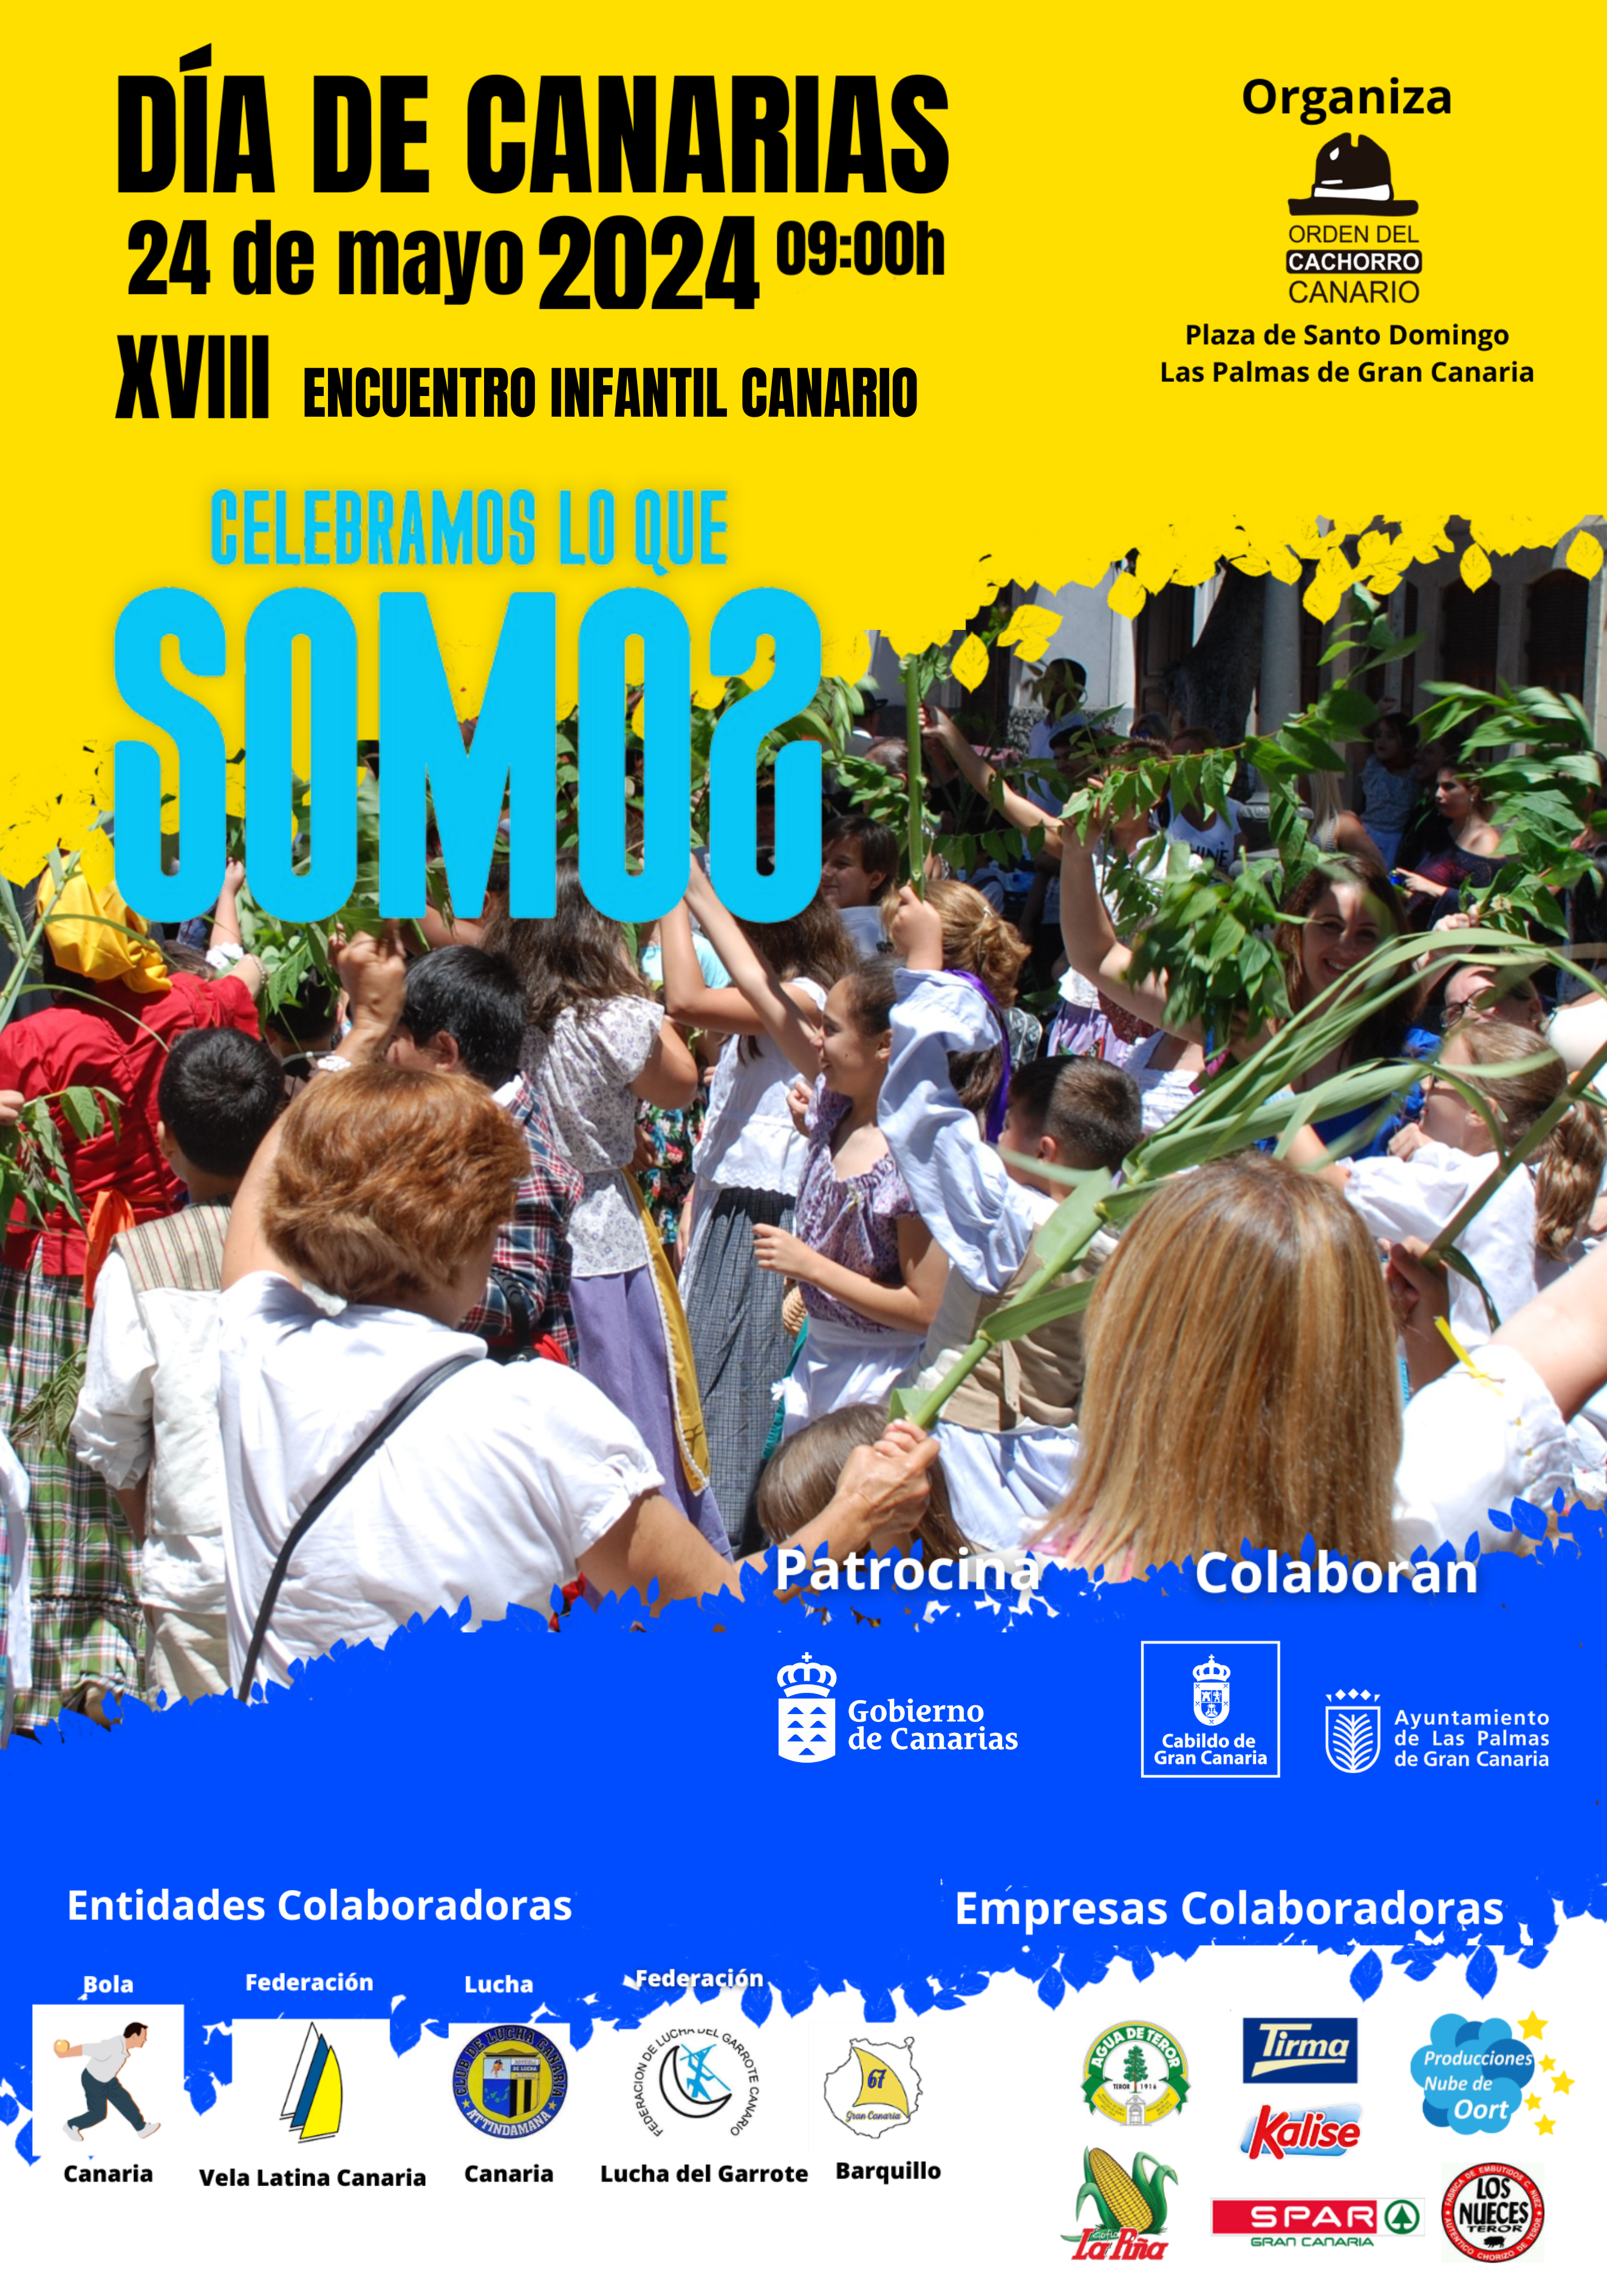 XVIII Encuentro Infantil Canario en la Plaza de Santo Domingo